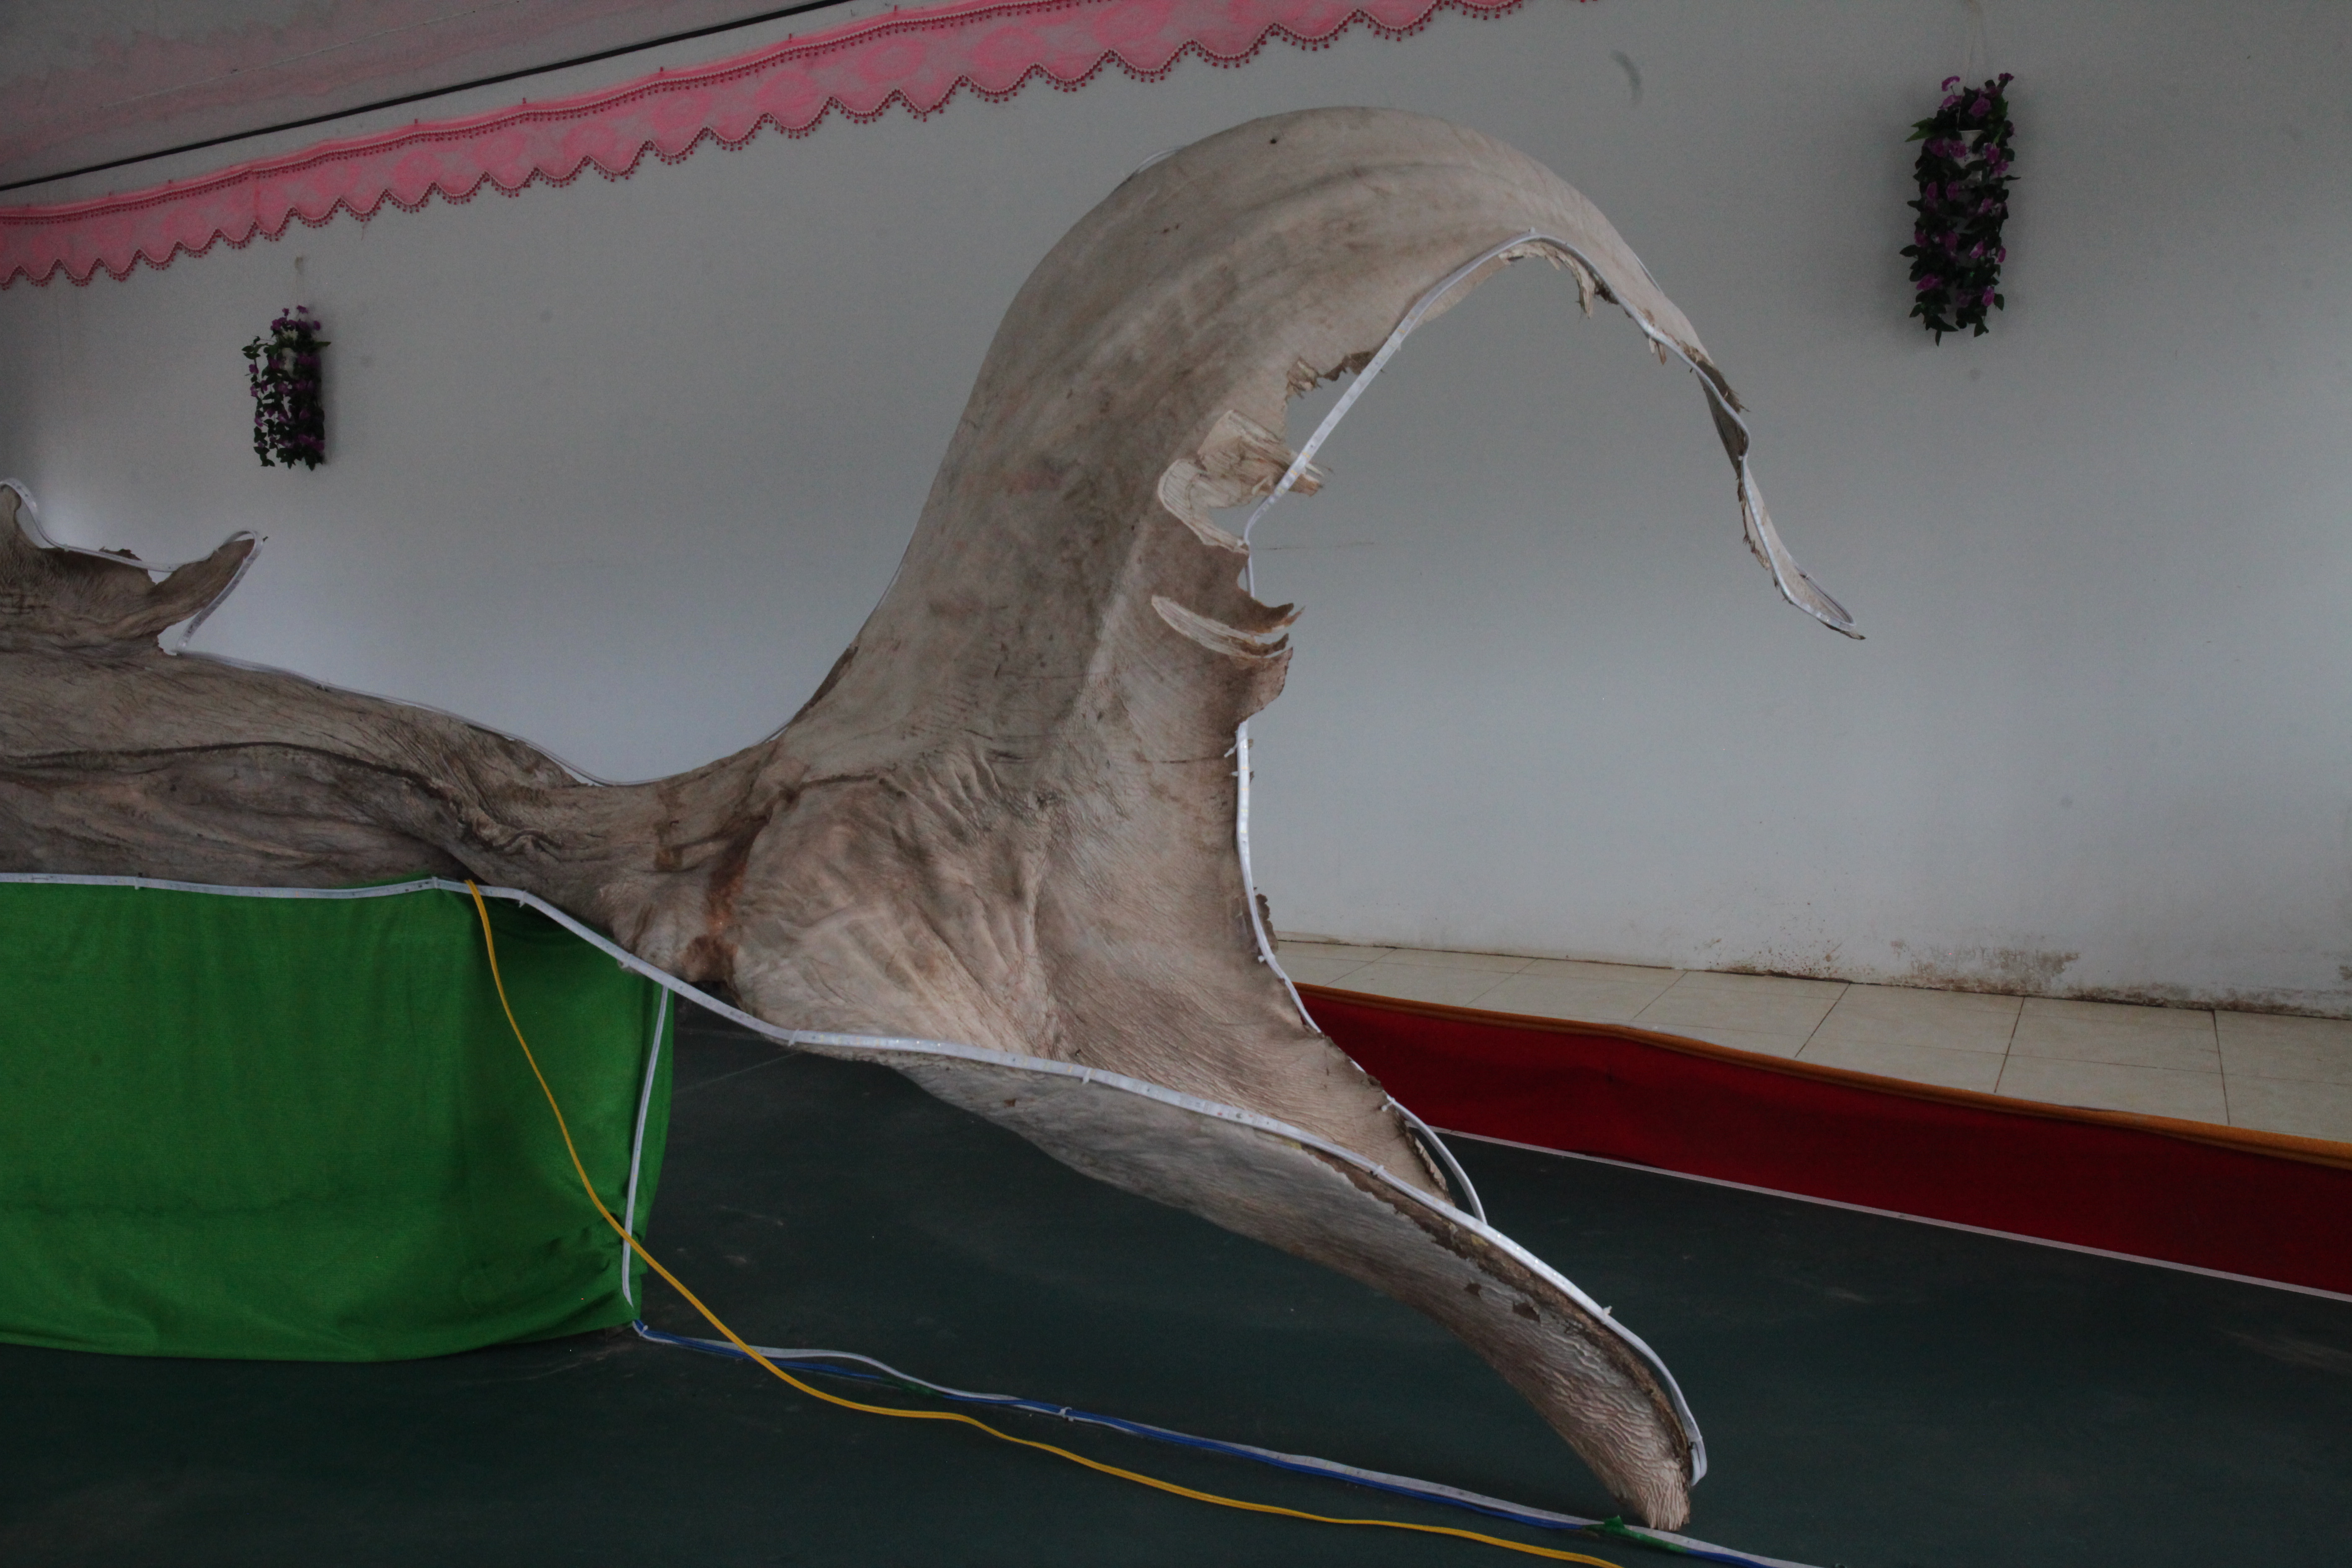 giant shark deep sea Trang web cờ bạc trực tuyến lớn nhất Việt Nam,  w9bet.com, đánh nhau với gà trống, bắn cá và baccarat, và giành được hàng  chục triệu giải thưởng